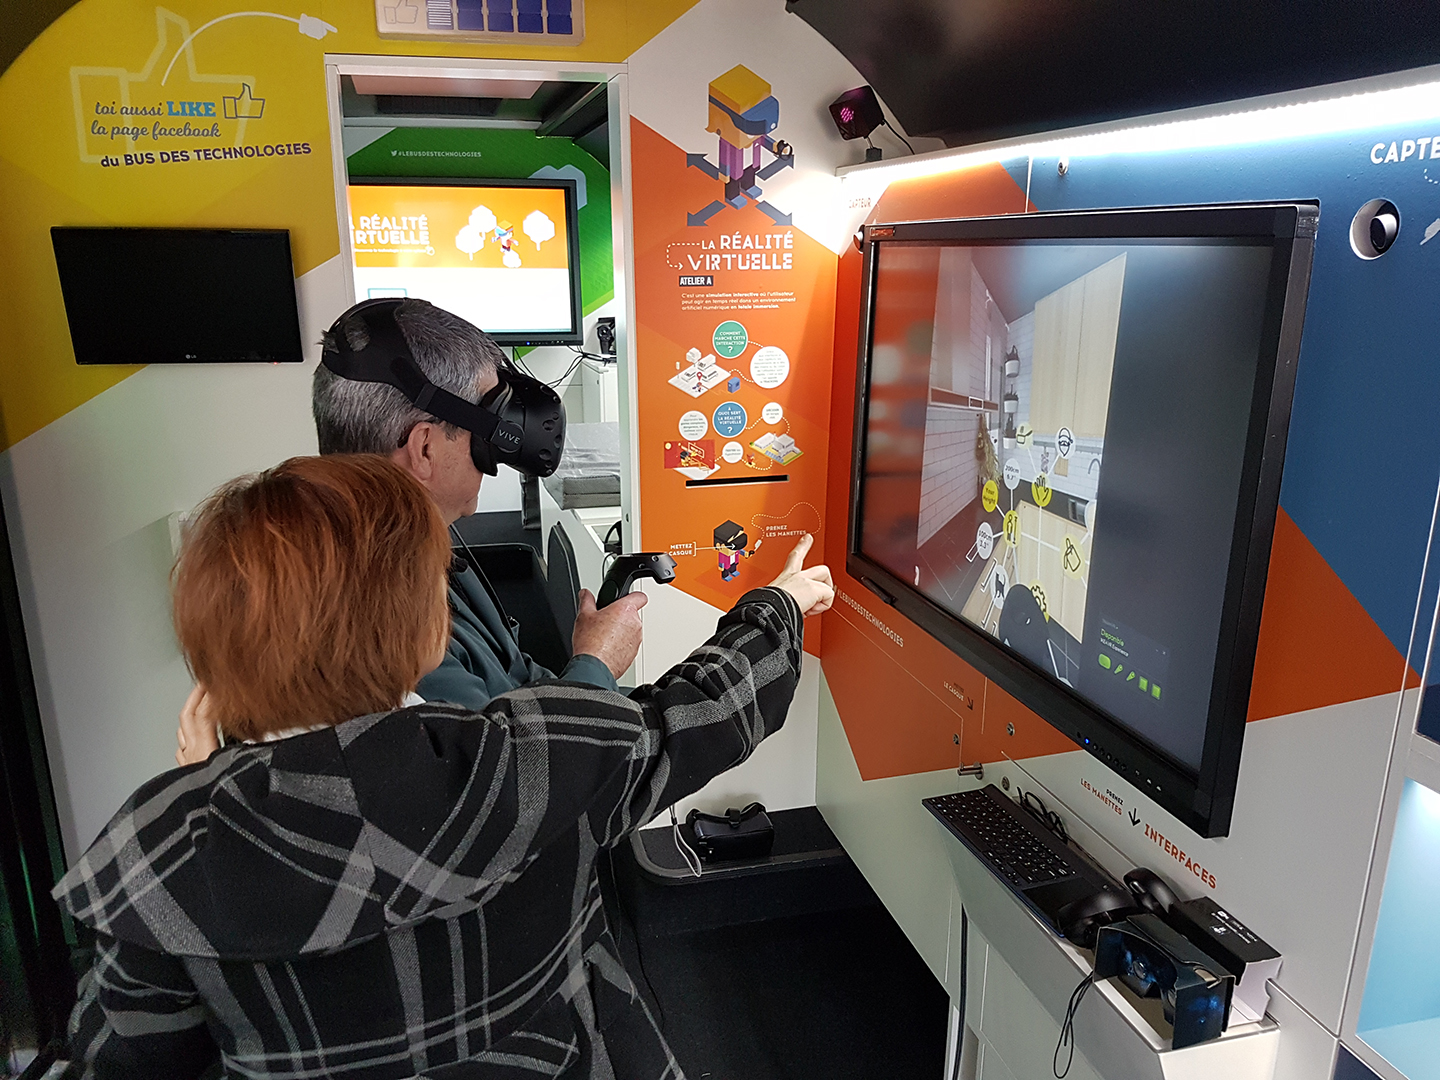 La réalité virtuelle dans le bus des technologies